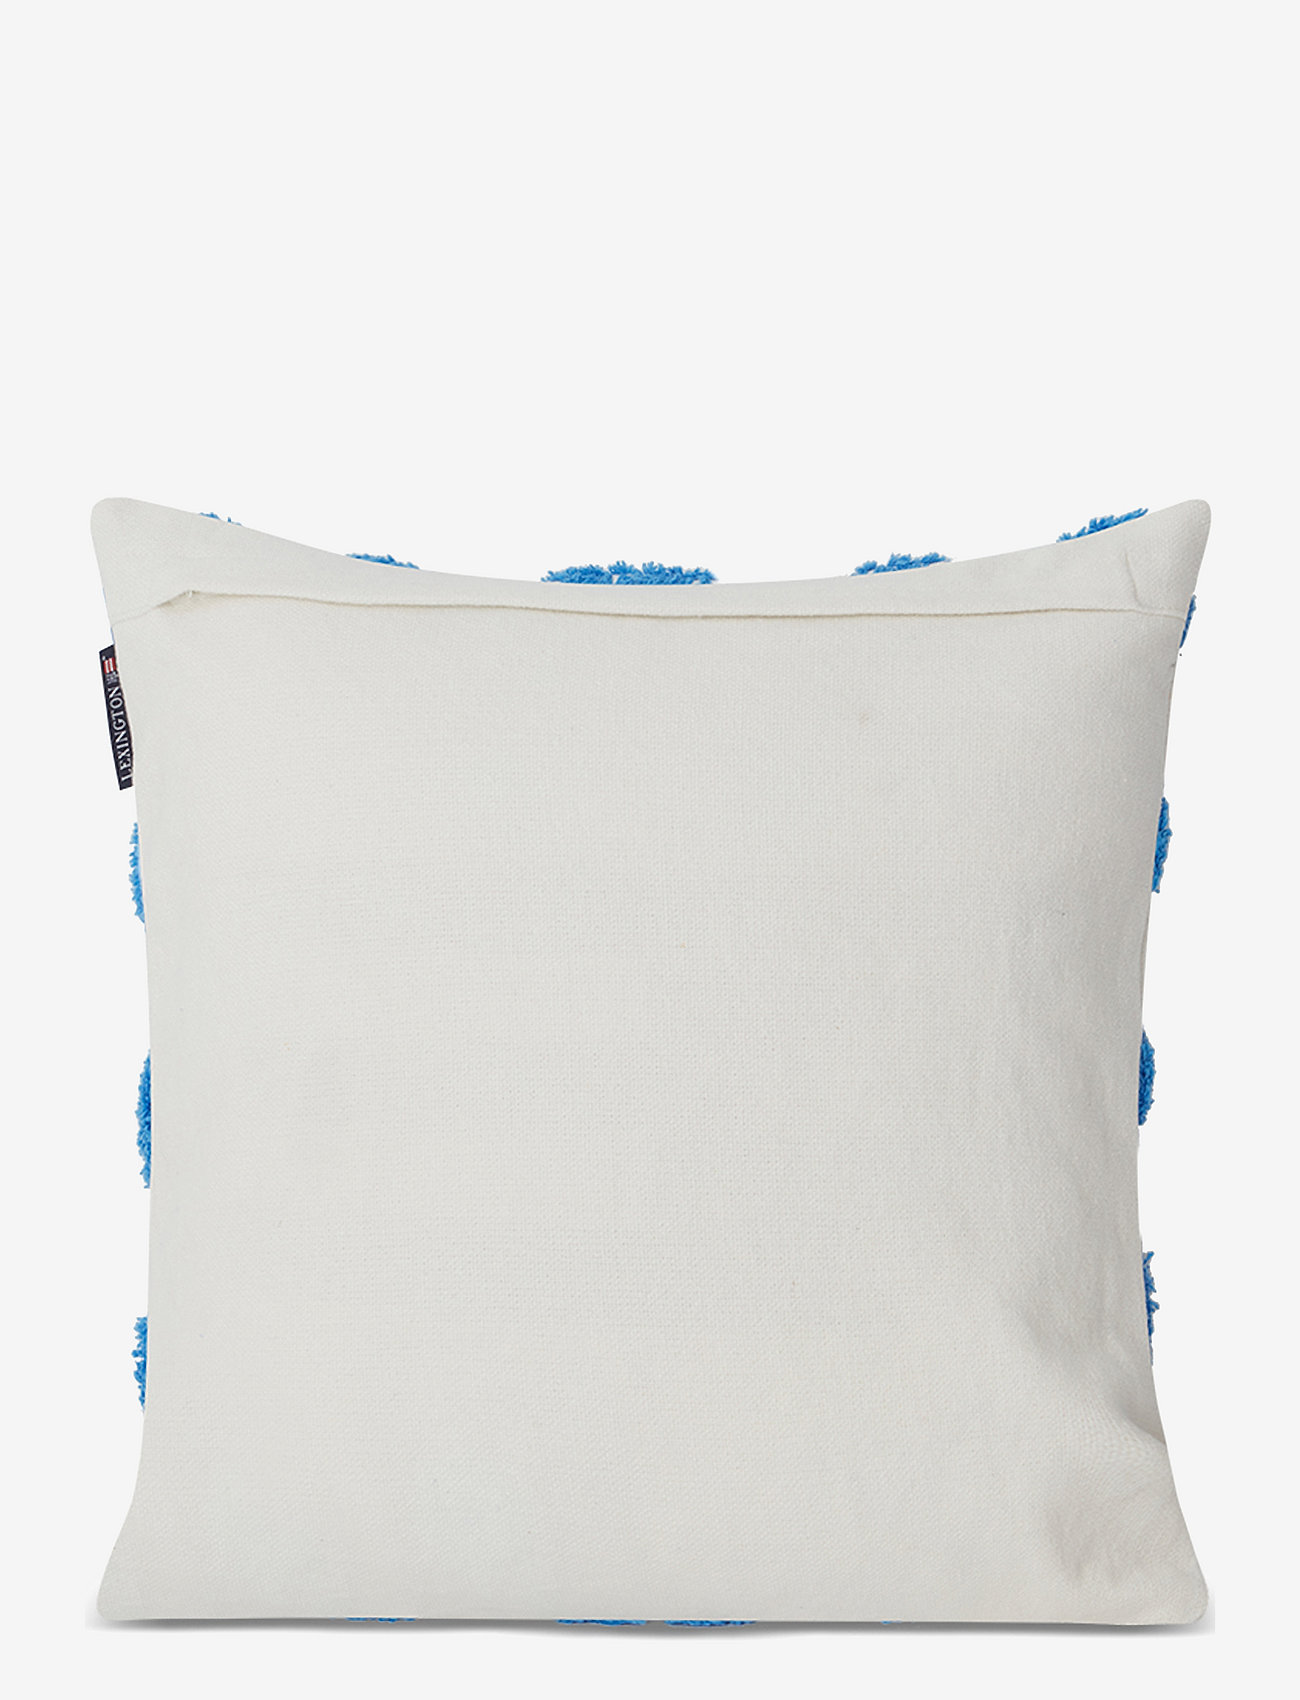 Lexington Home - Rug Graphic Recycled Cotton Canvas Pillow Cover - kussenhoezen - white/blue - 1